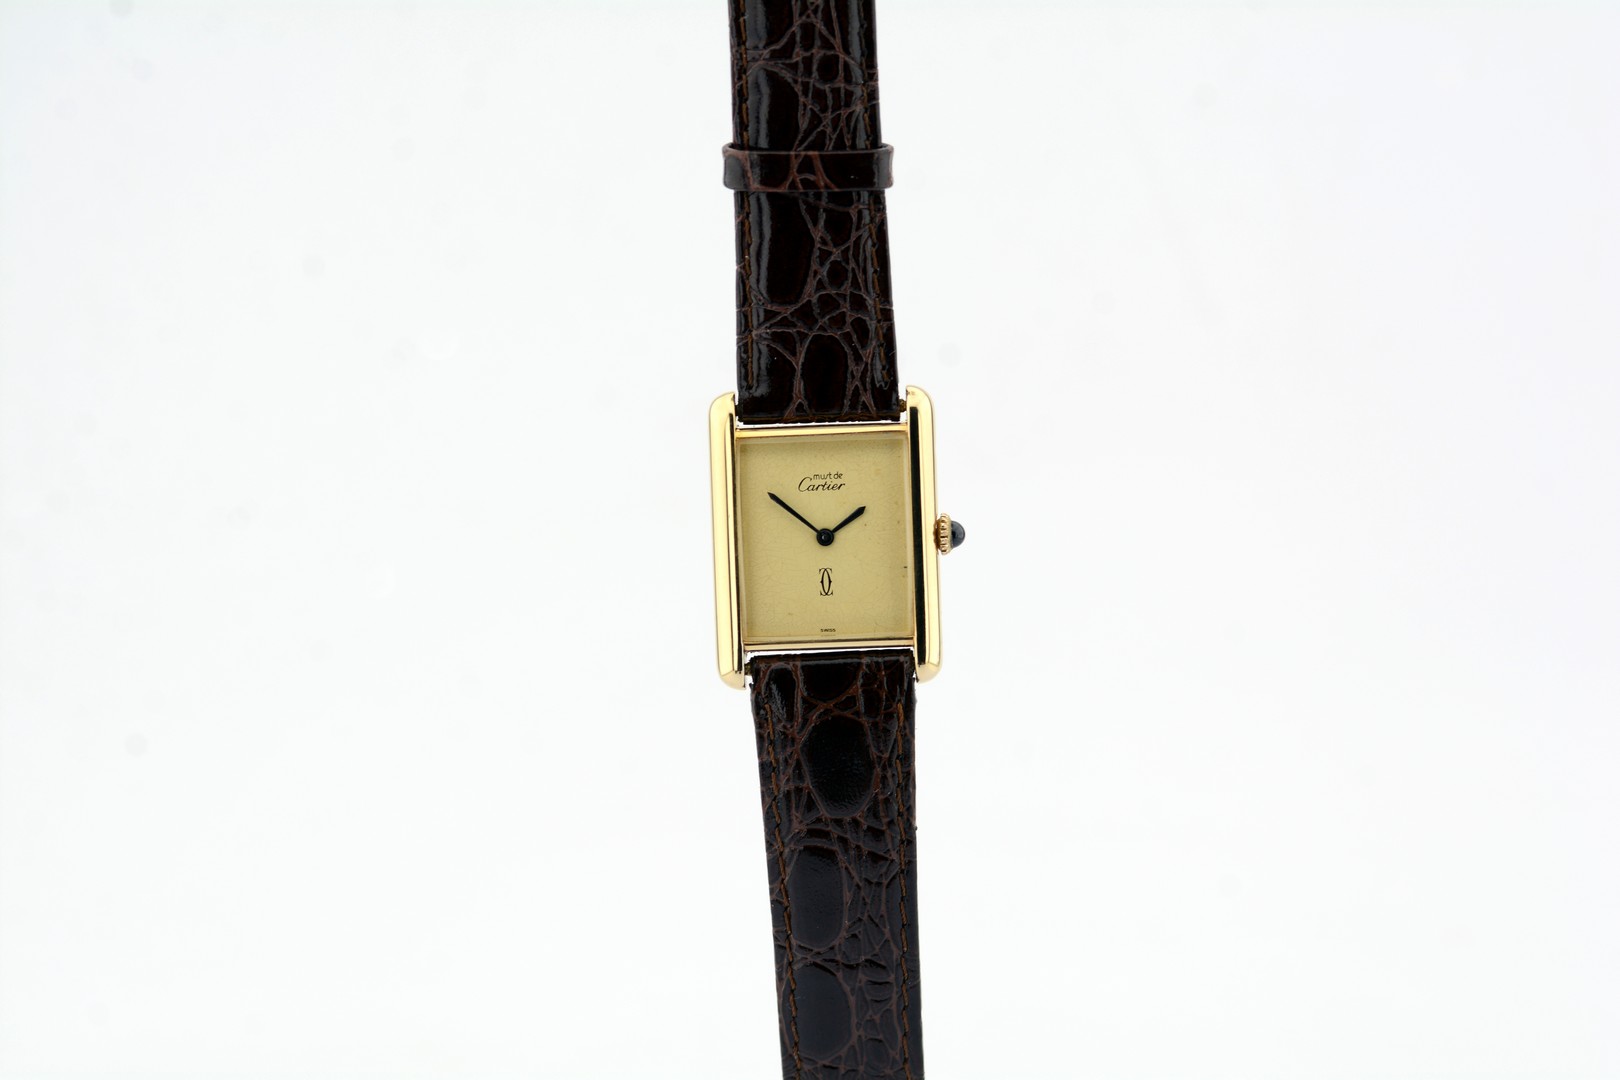 Cartier / Must de - Lady's Gold/Steel Wrist Watch - Image 7 of 8